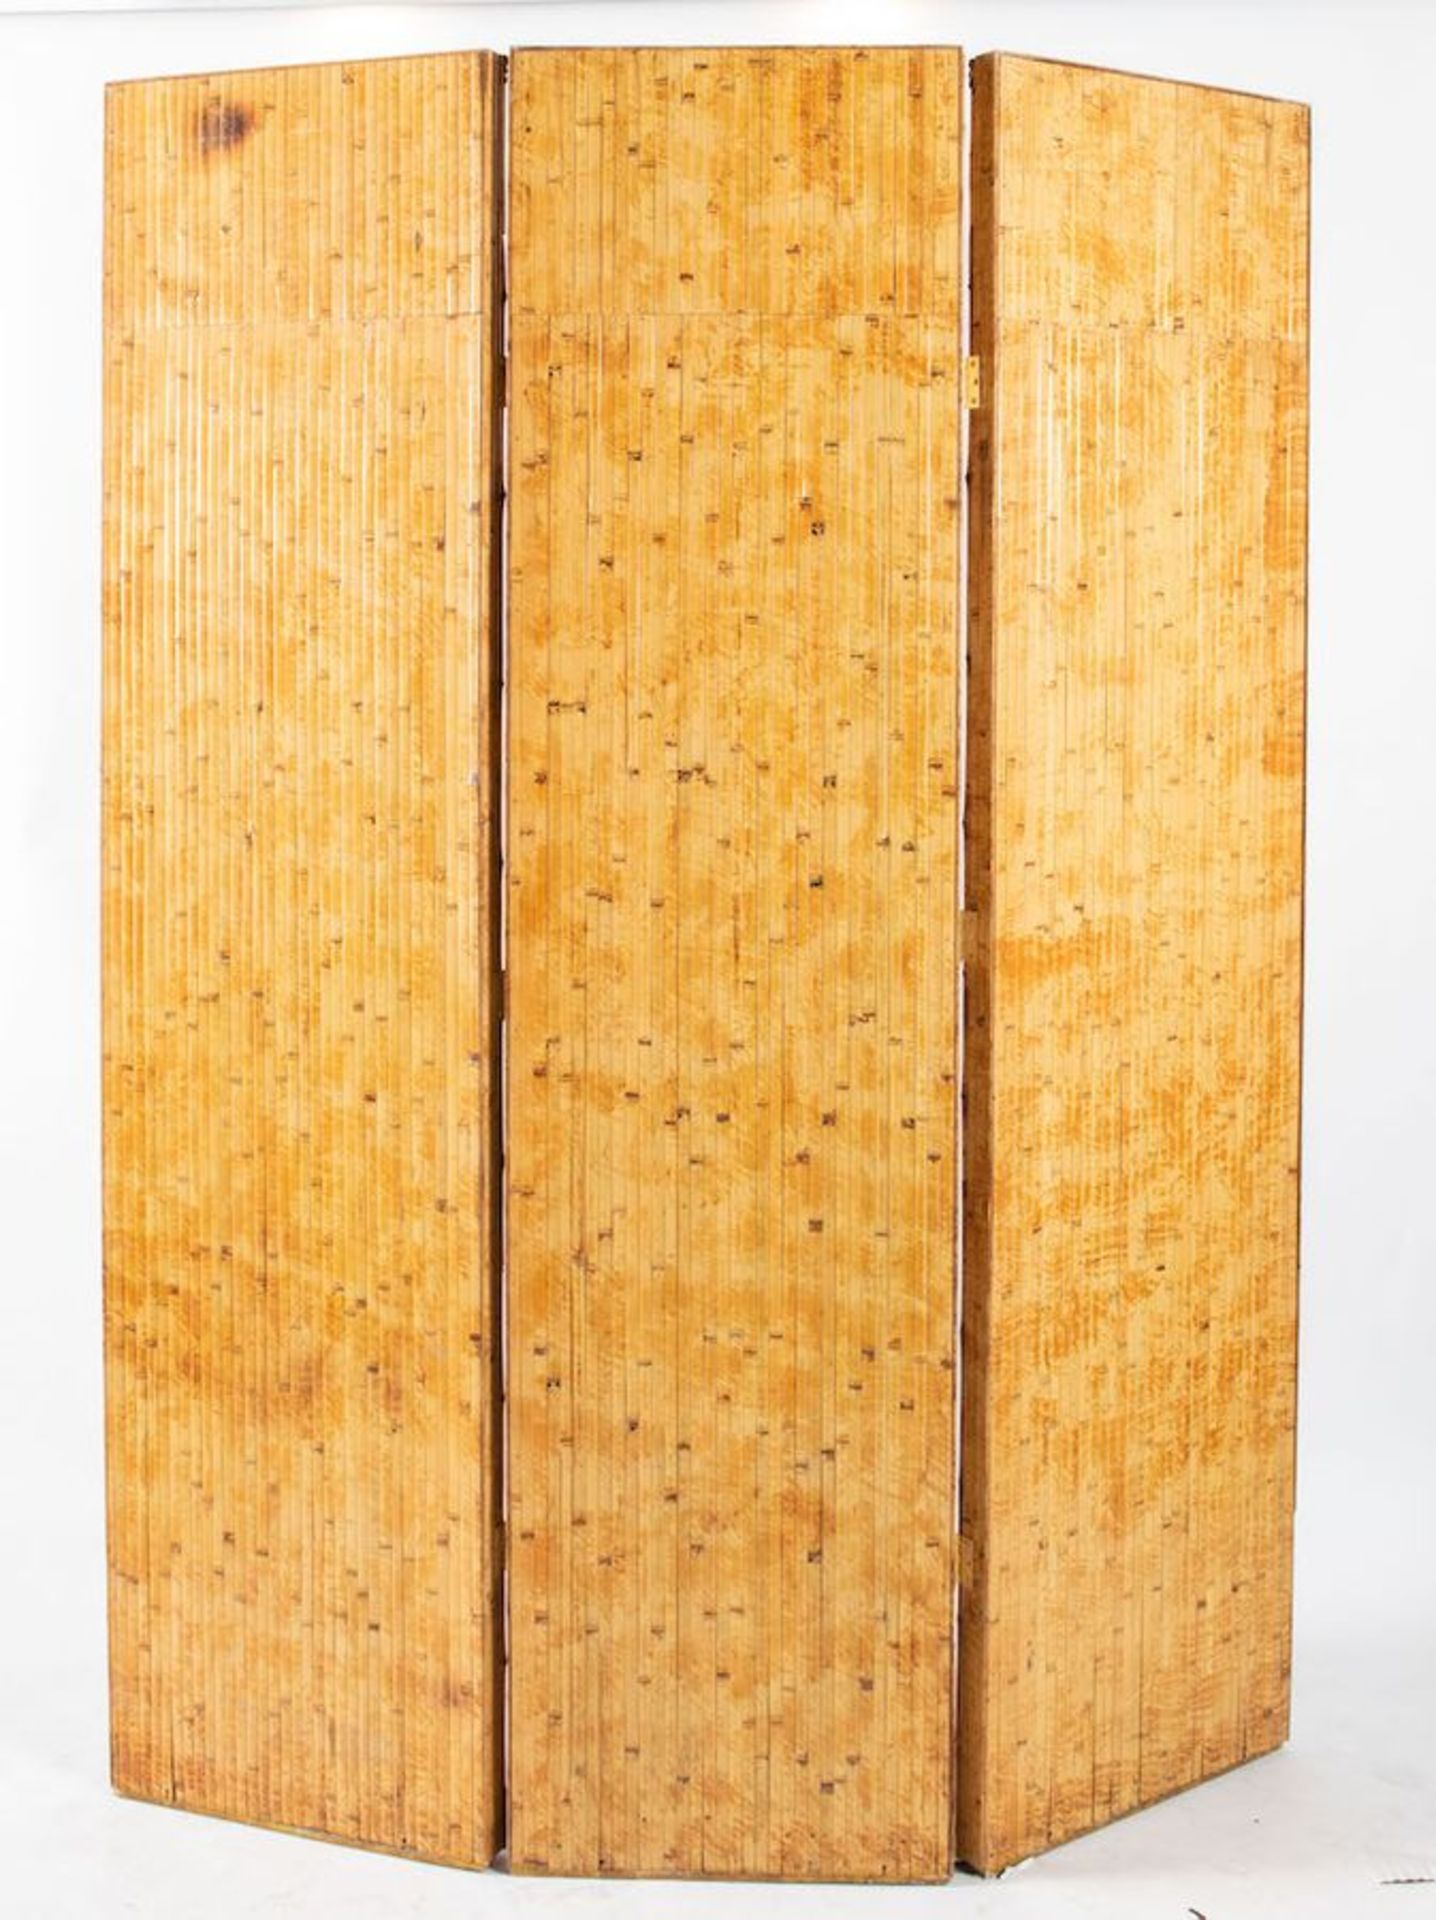 VIVAI DEL SUD, attr. Paravento in bamboo e canna d’india con specchi. Prod. Italia, 1970 ca. Cm 215x - Bild 2 aus 2